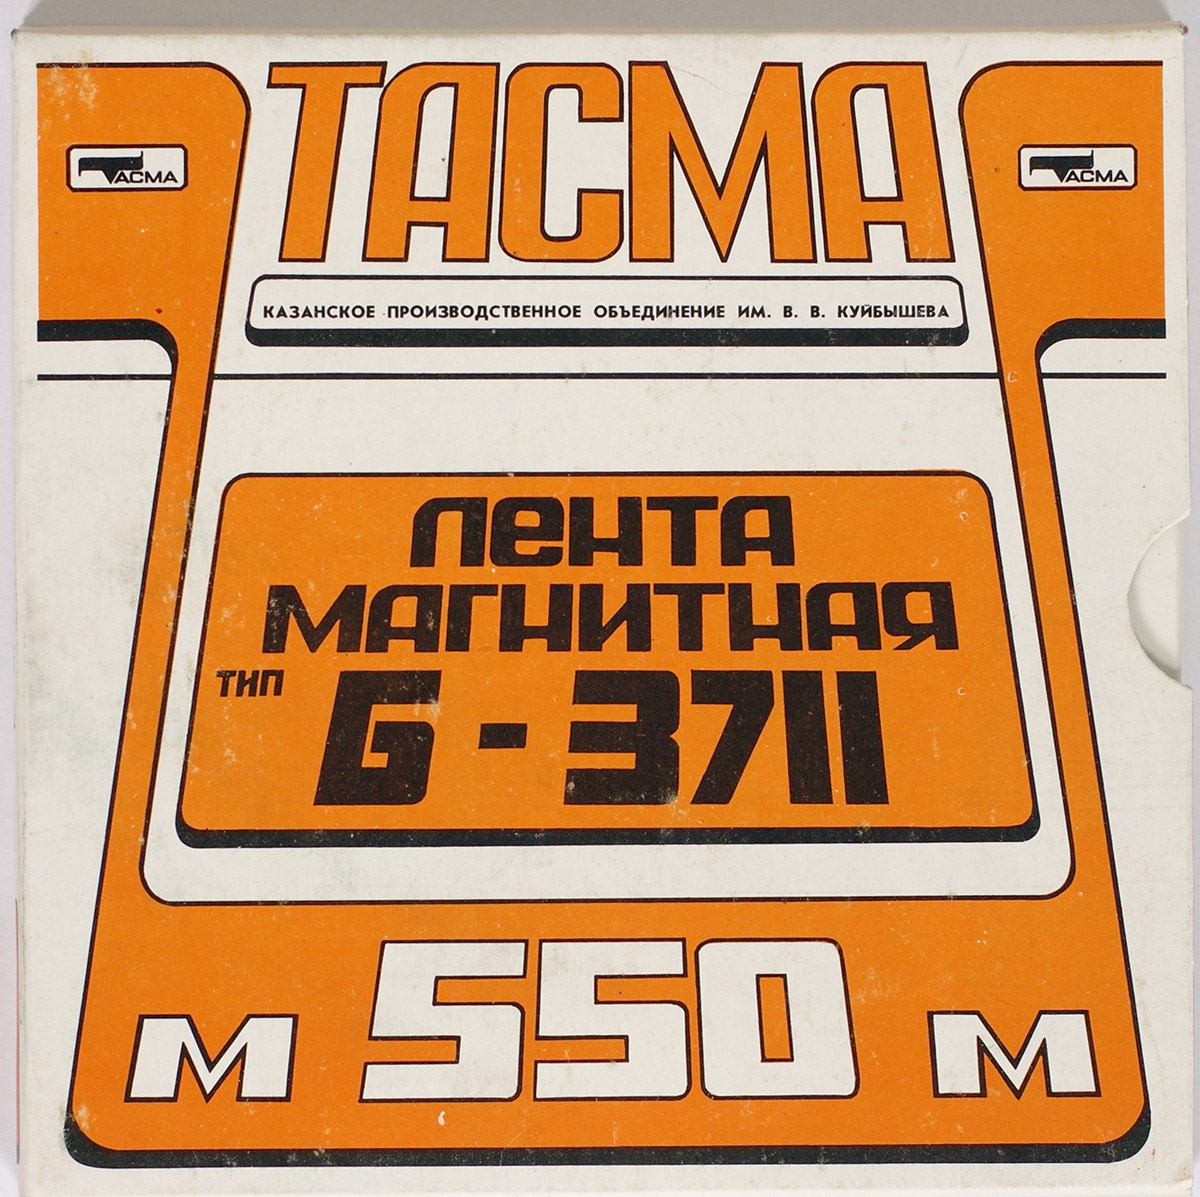 ТАСМА Б-3711 купить